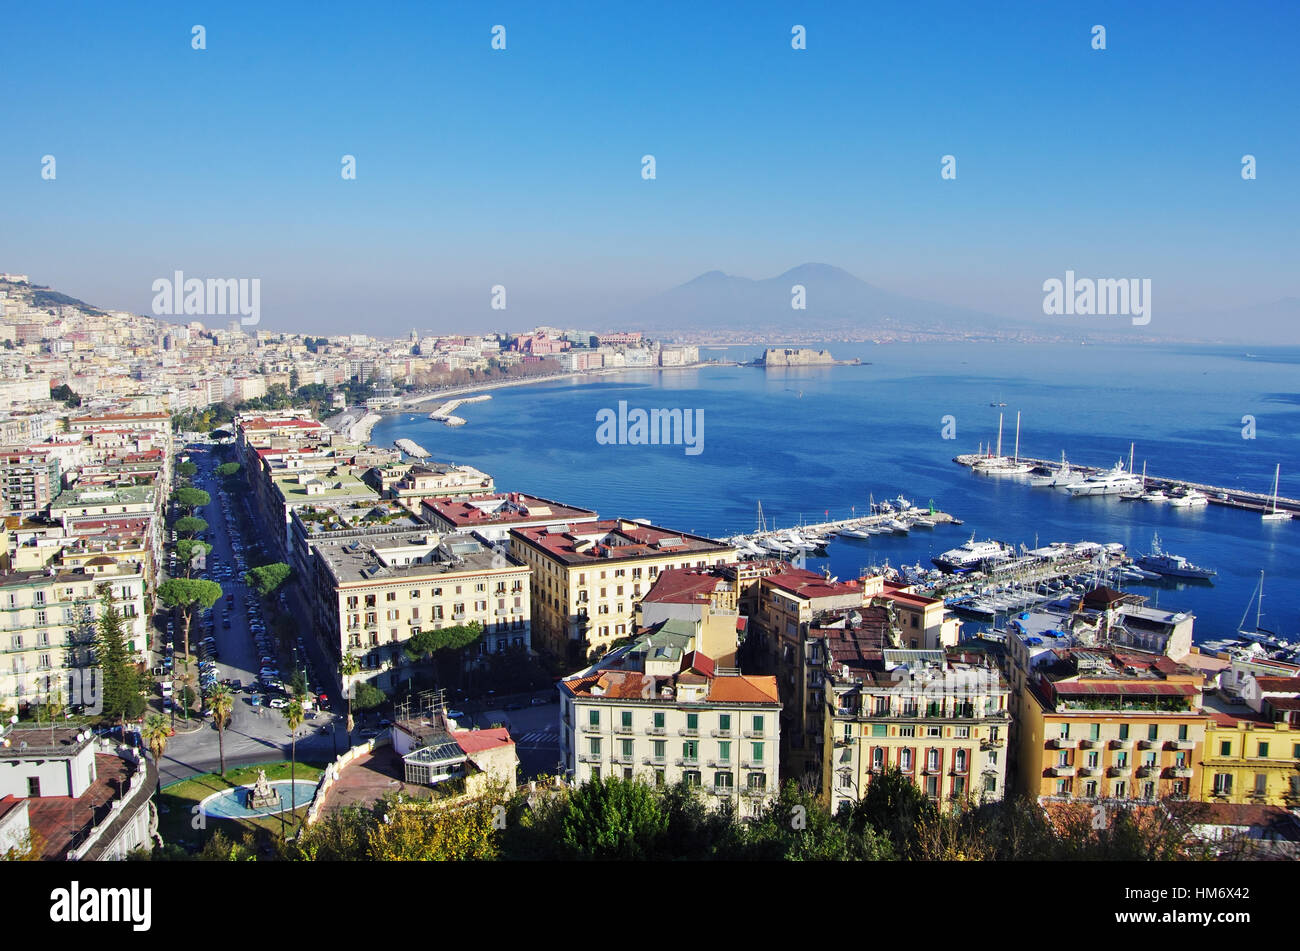 Vue aérienne de Naples et son golfe, avec le Vésuve en arrière-plan Banque D'Images